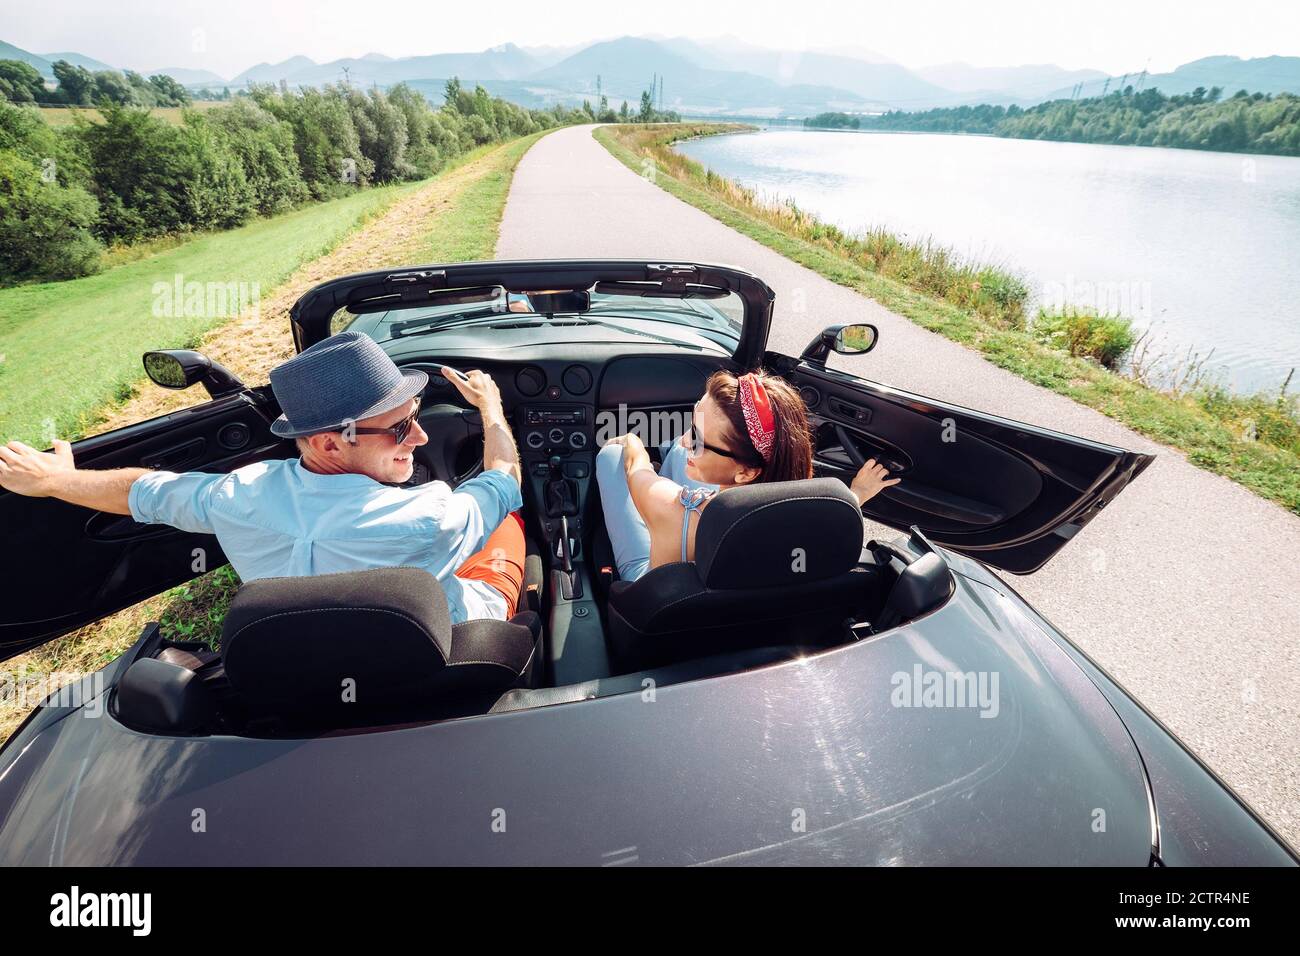 Ein Paar in der Liebe immer in das Cabrio-Auto und beginnt eine Reise. Paar Flitterwochen oder Urlaub Konzept Bild. Stockfoto